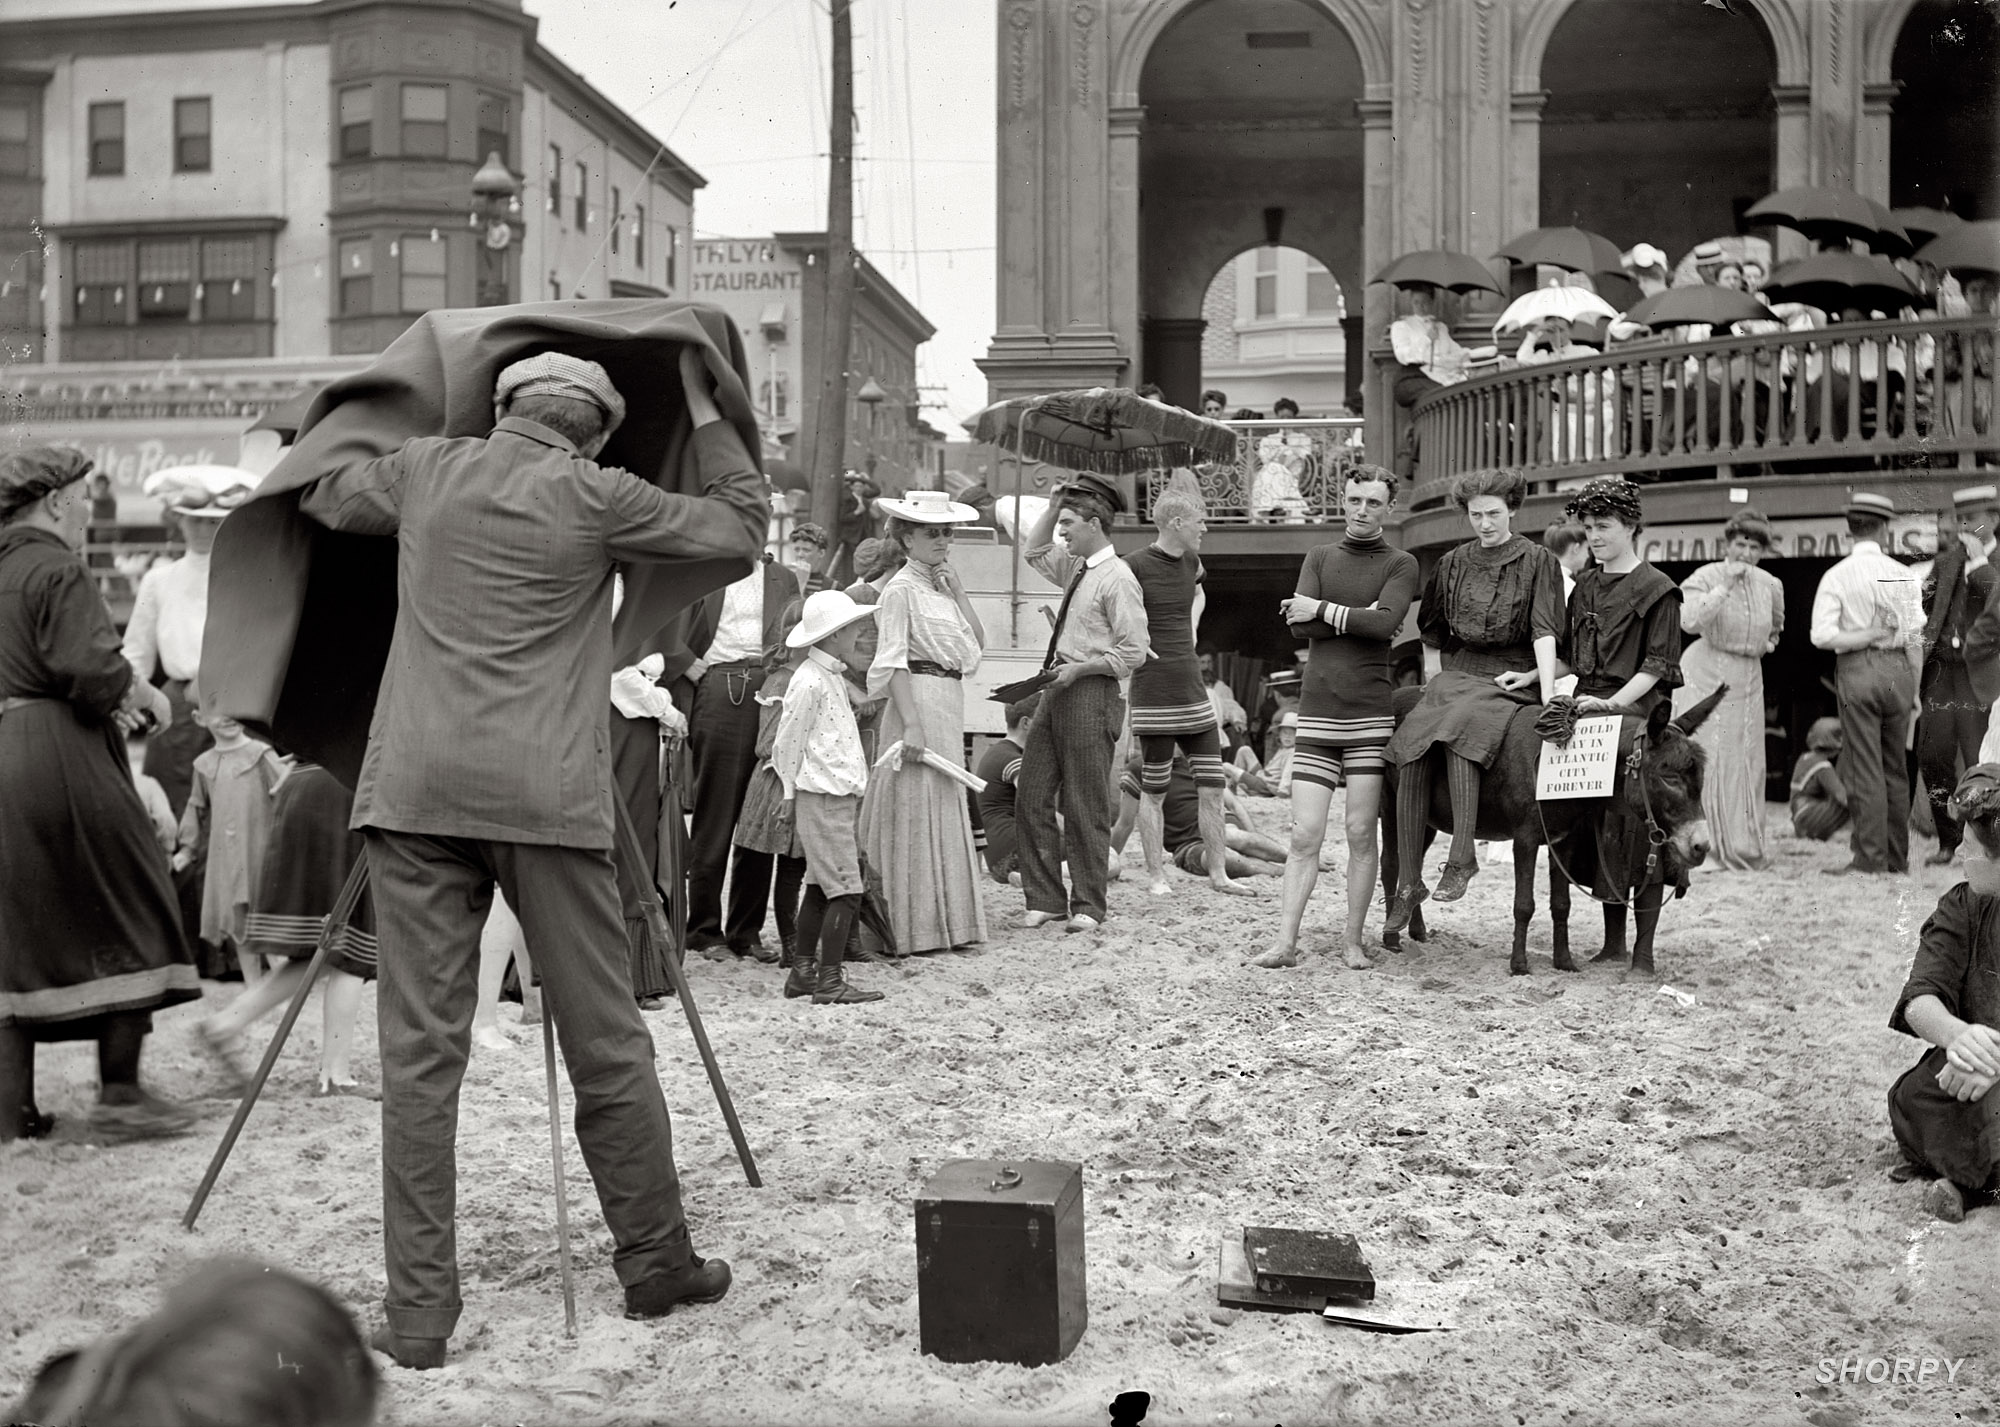 Kodak moment, Atlantic City, 1912